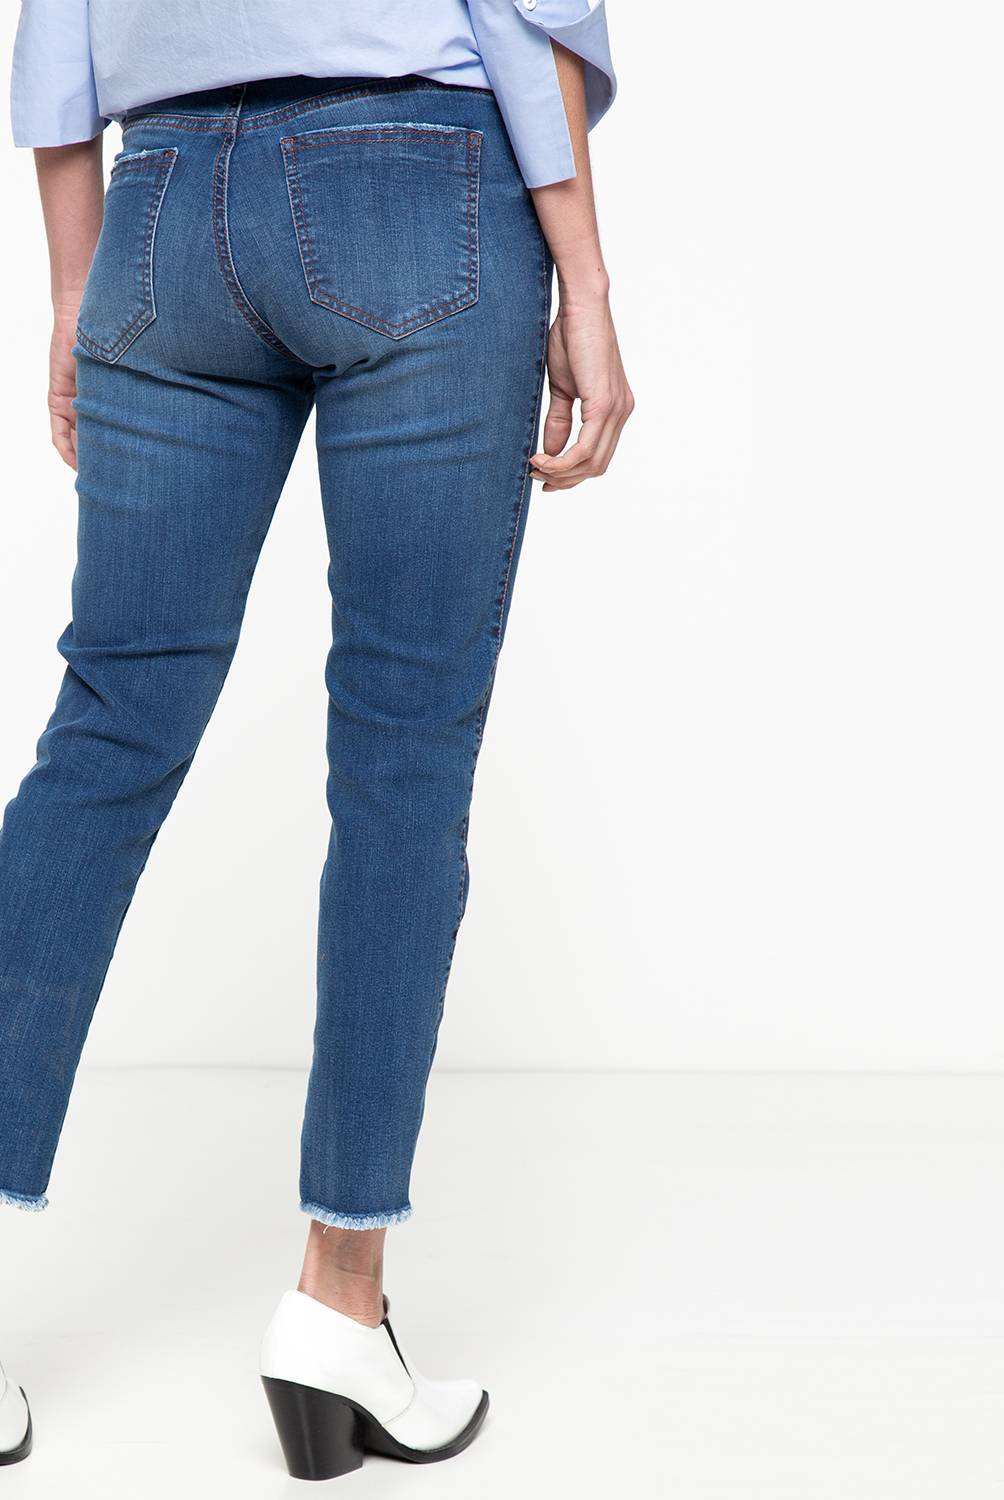 BASEMENT - Jeans Colección Cher